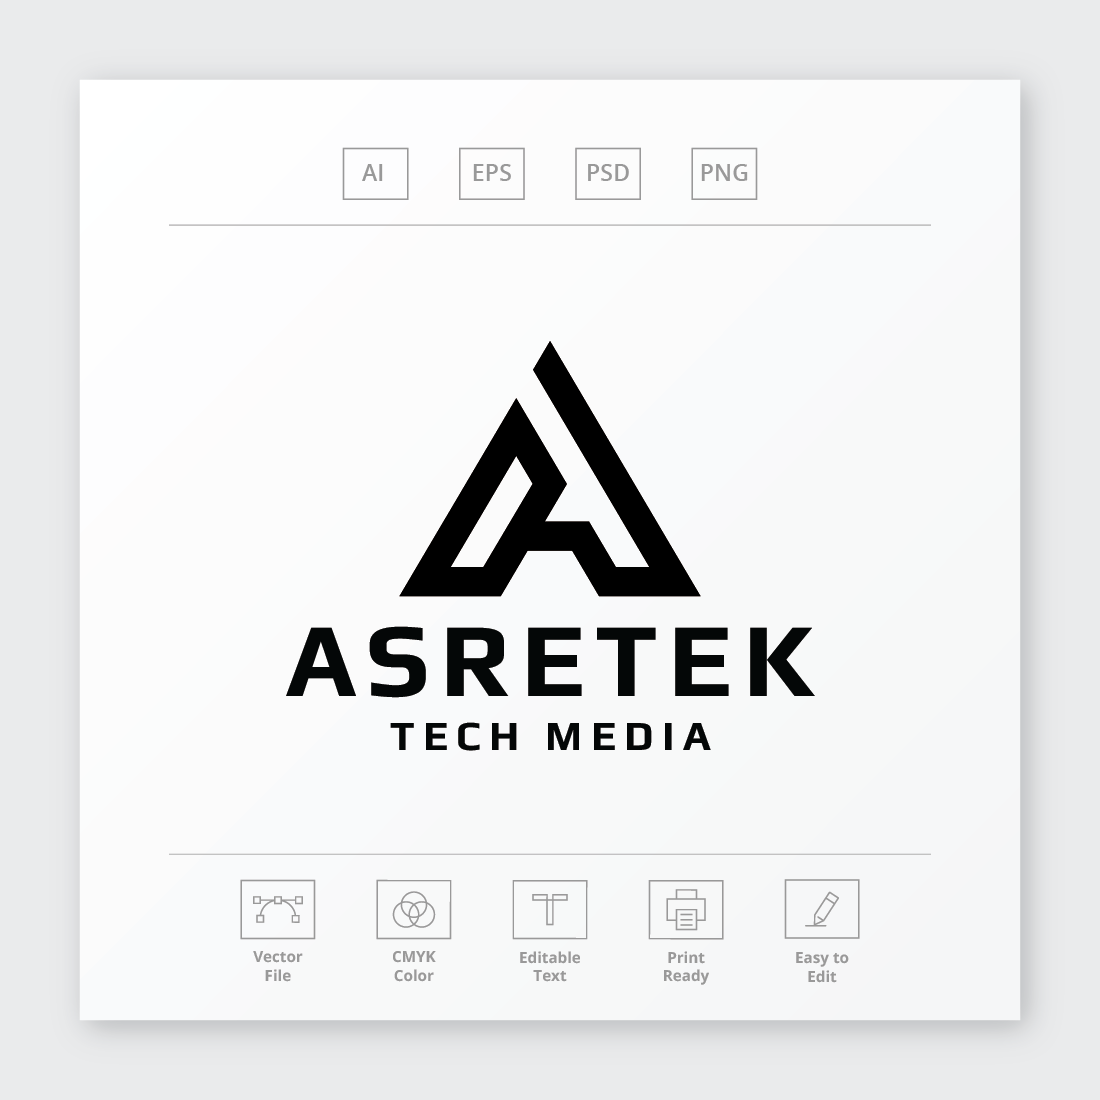 Asretek Letter A Logo cover image.